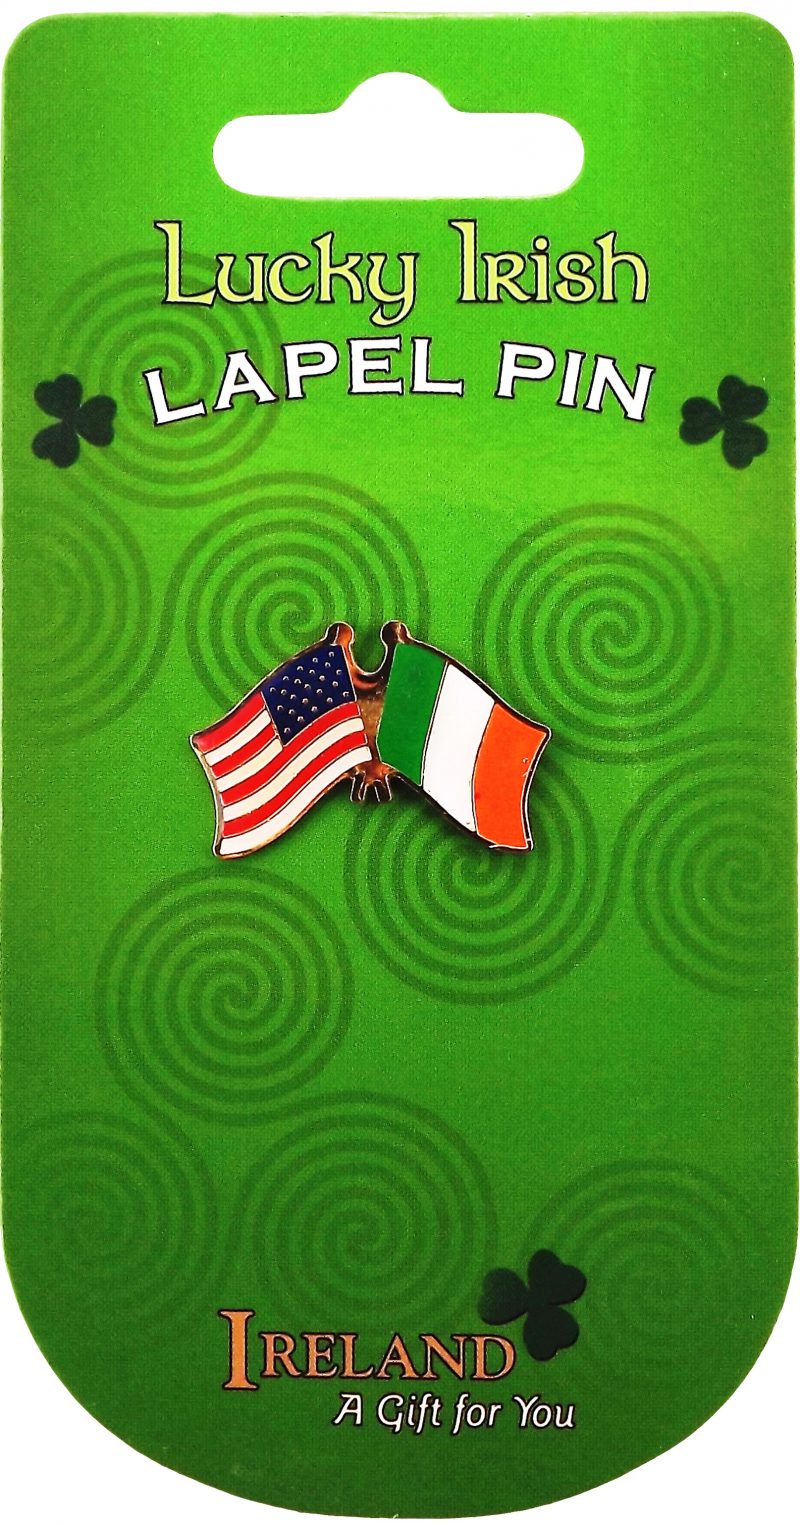 Dual flag lapel pin American / Irish flags